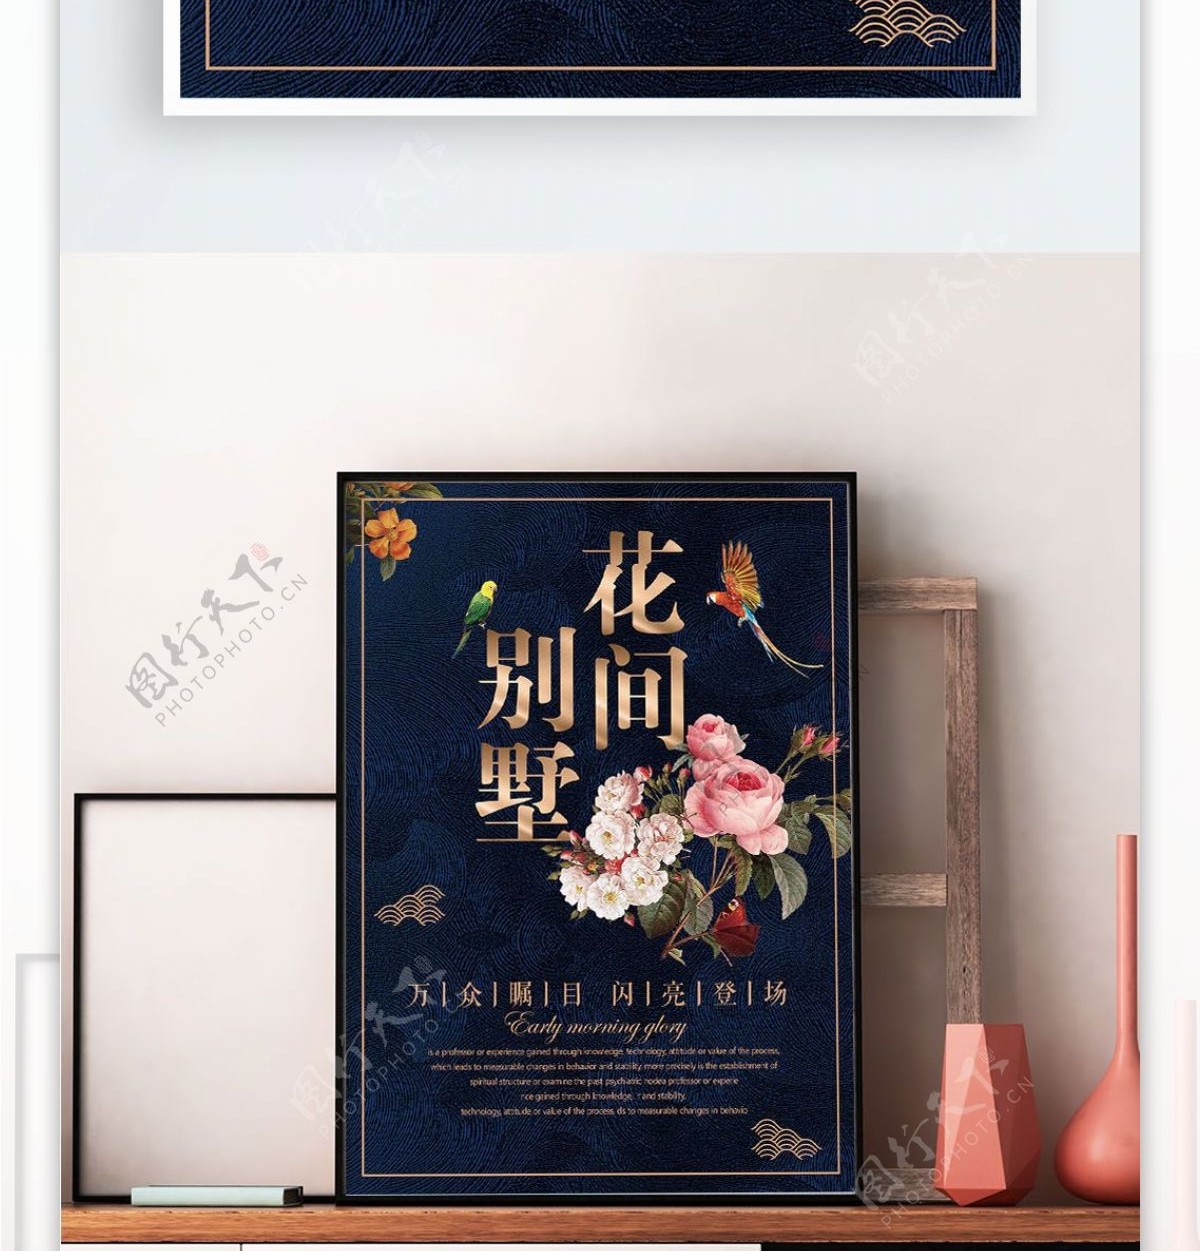 蓝色背景简约中国风花间别墅宣传海报